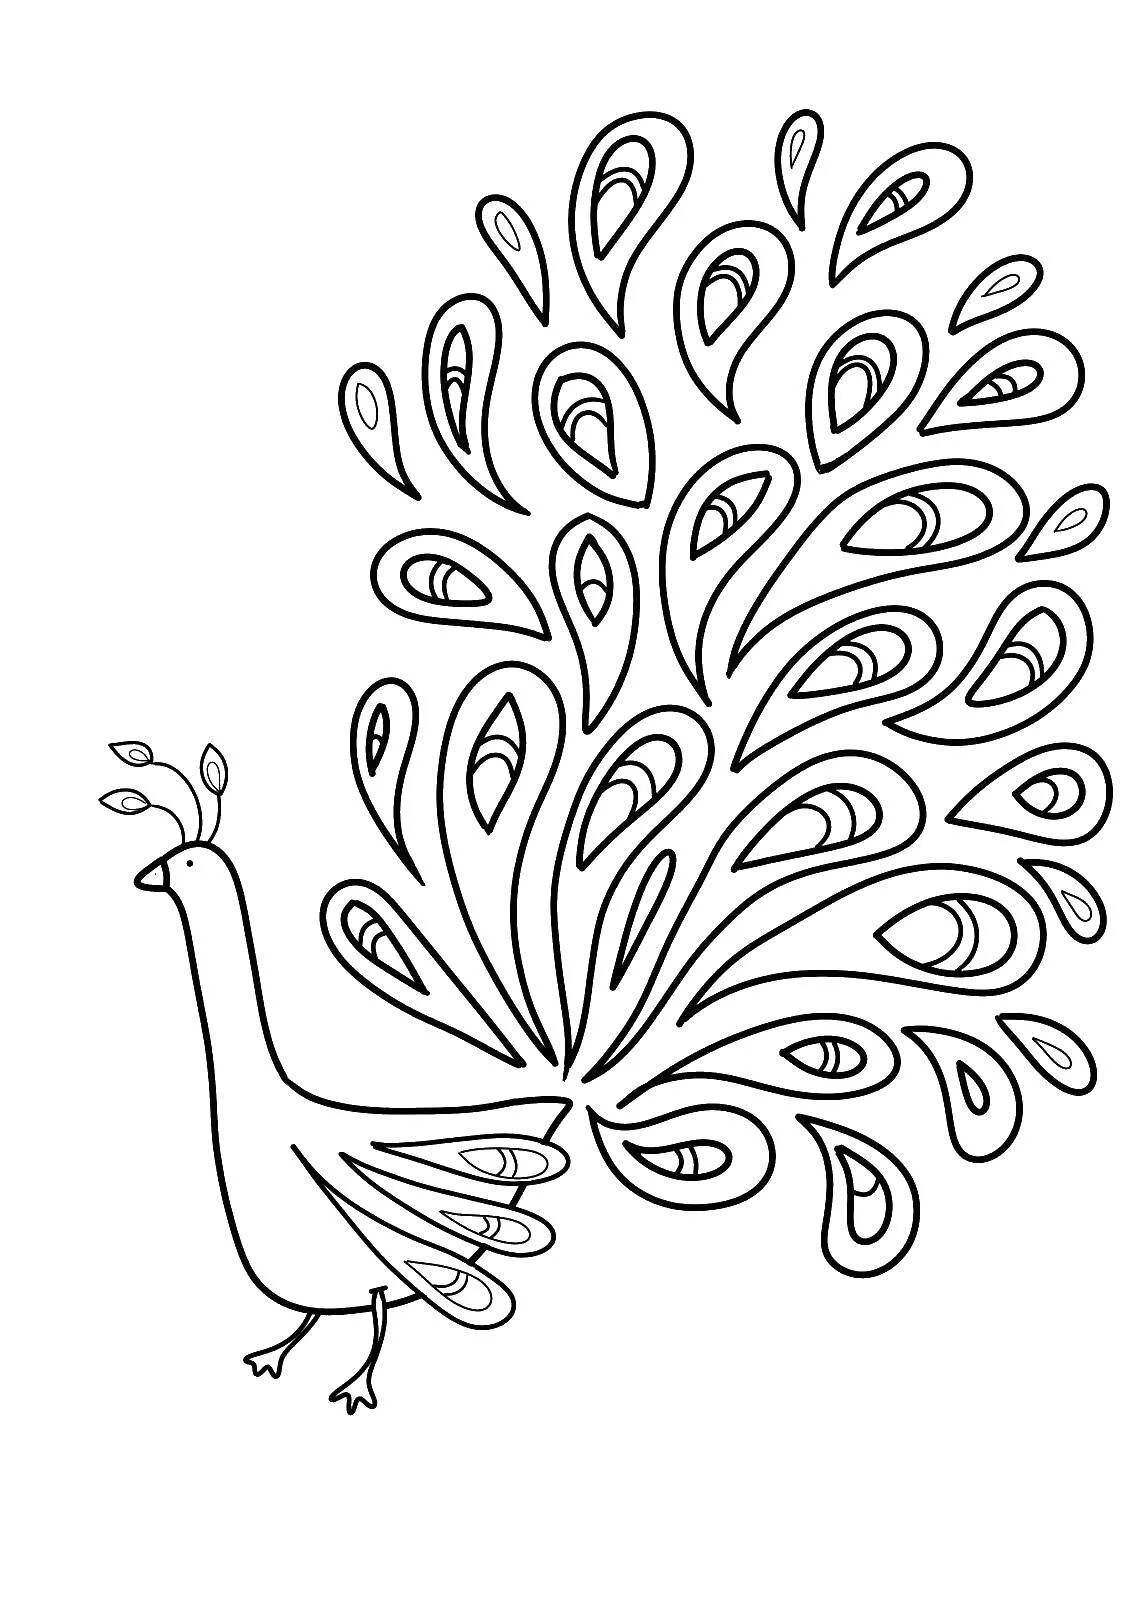 Шаблон сказочной птицы. Павлин. Раскраска. Павлин раскраска для детей. Сказочная птица раскраска. Сказочная птица раскраска для детей.